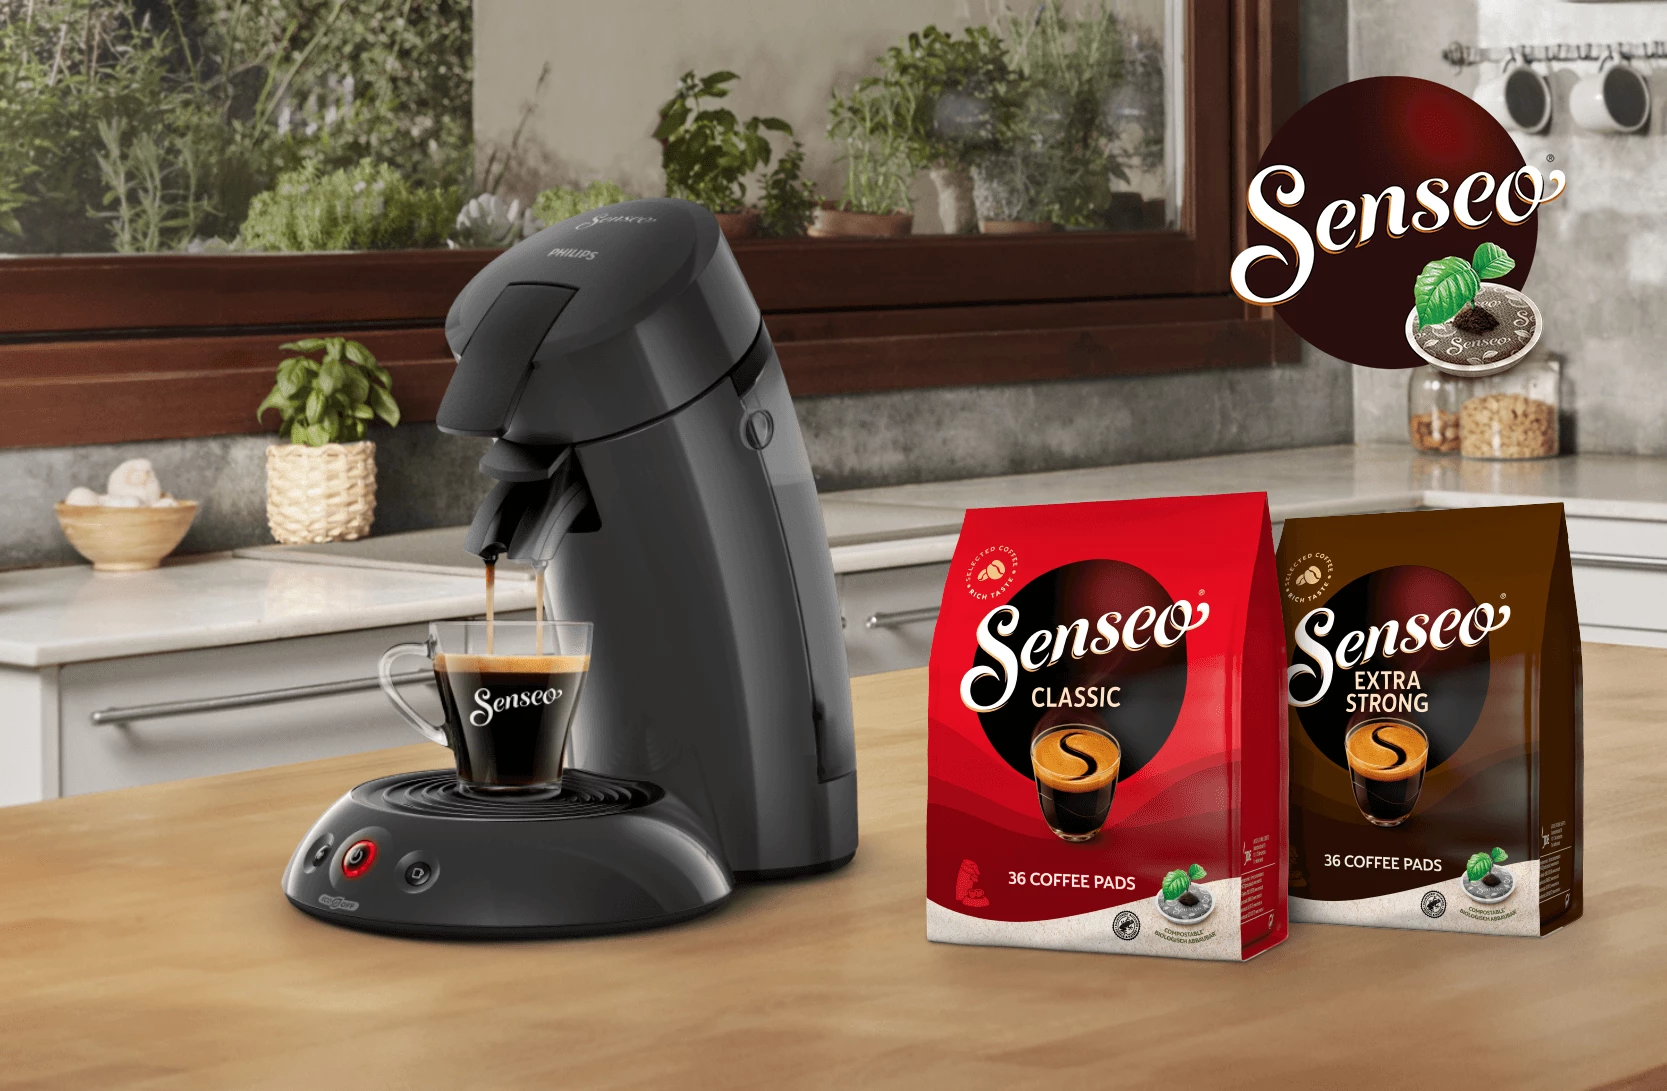 Forkorte Beregning tilgive Senseo Kaffemaskiner til kaffepuder | Find kapselmaskiner her